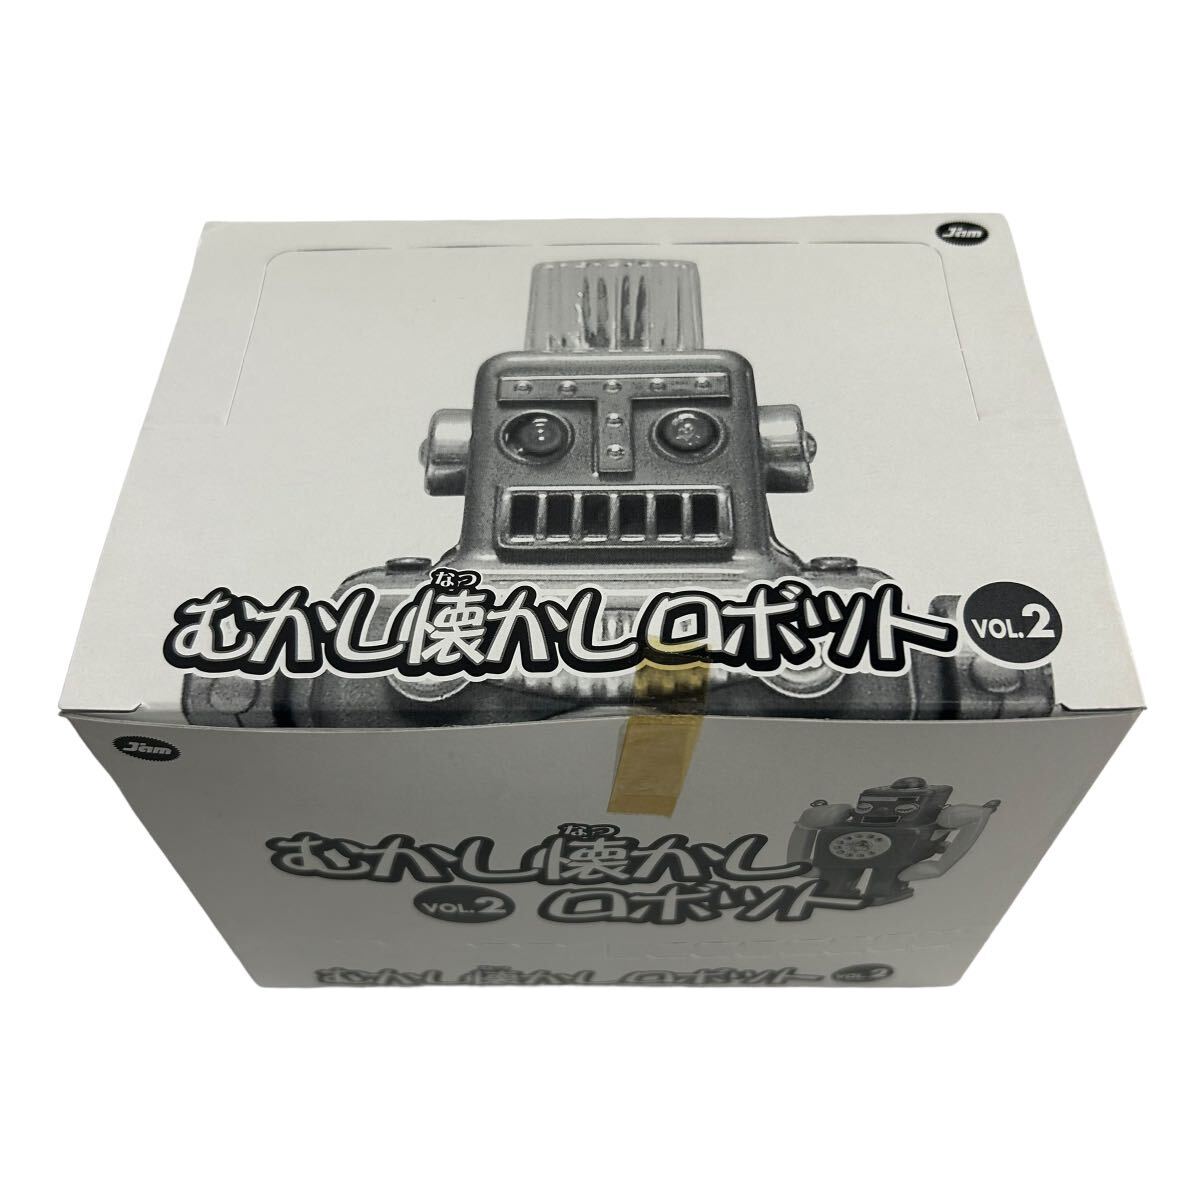 mu.. ностальгия робот Vol2 нераспечатанный 2 коробка комплект 6 вид + Secret 1 вид итого 12 штук Osaka жестяная пластина игрушка материалы .